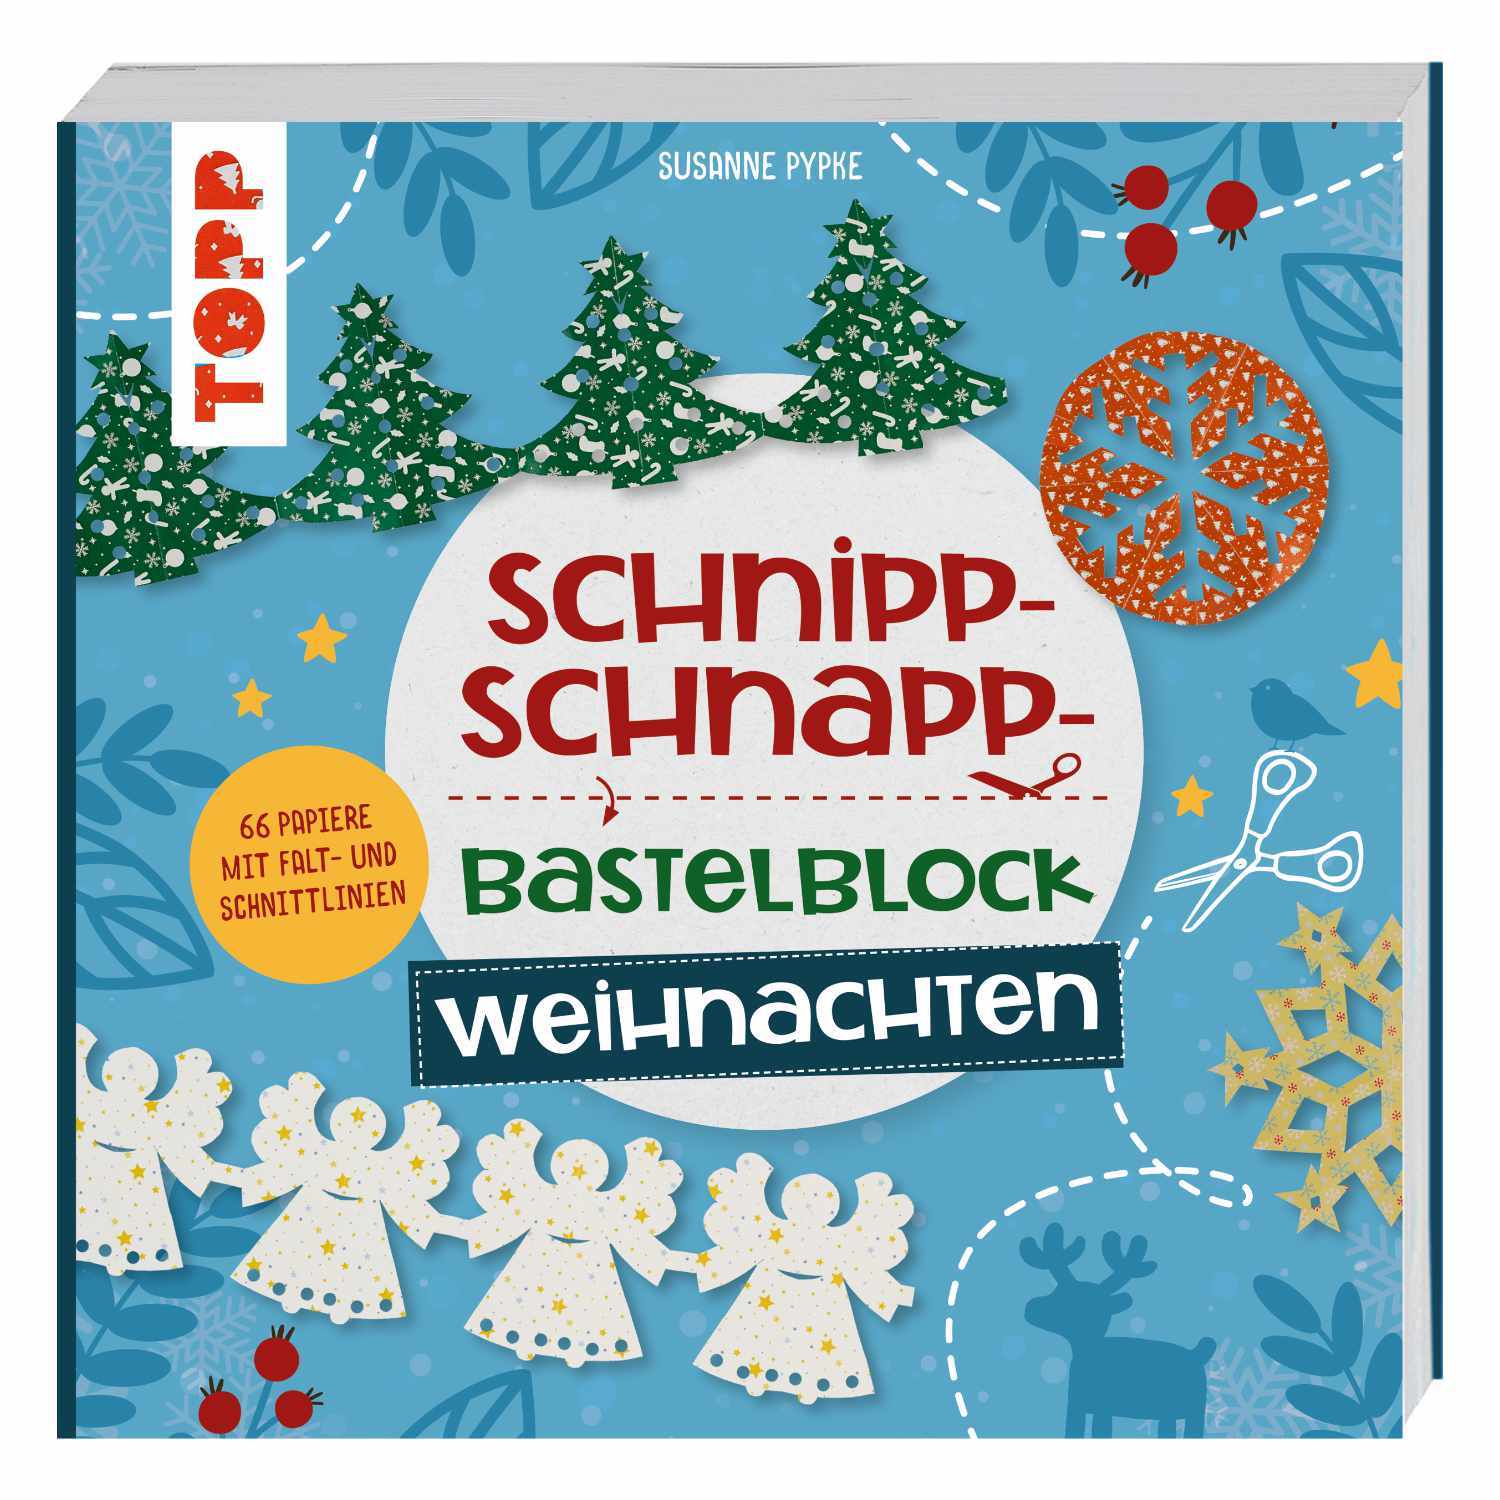 Schnipp-Schnapp Bastelblock - Weihnachten